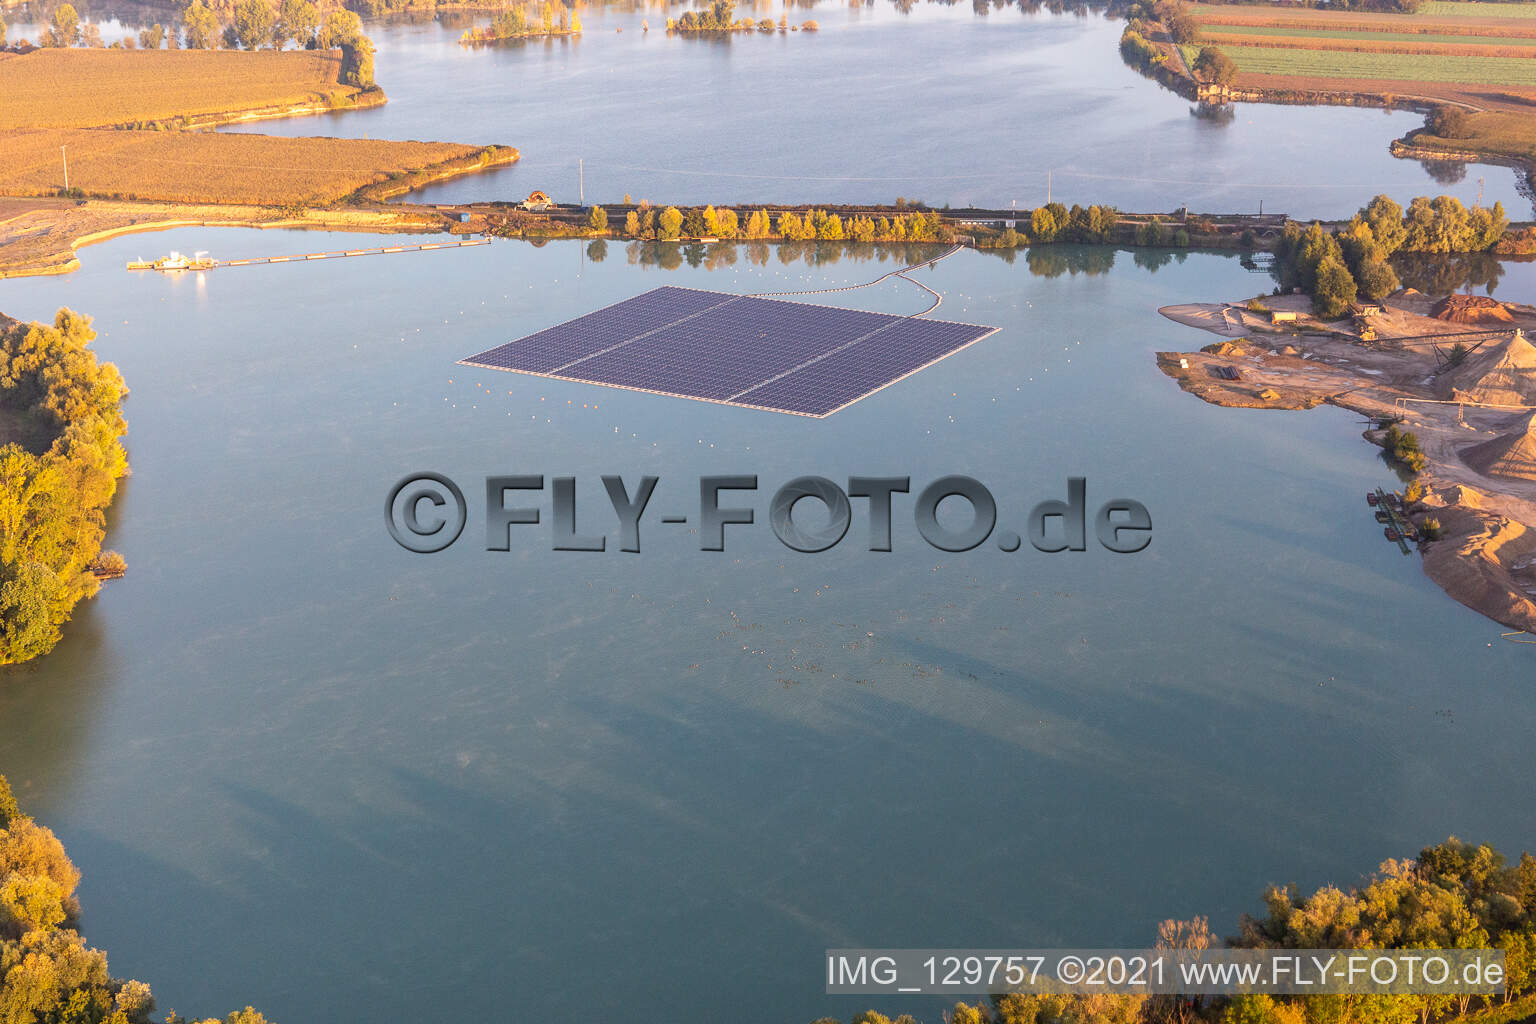 Schwimmende Photovoltaik-Insel auf Kiesweier in Leimersheim im Bundesland Rheinland-Pfalz, Deutschland